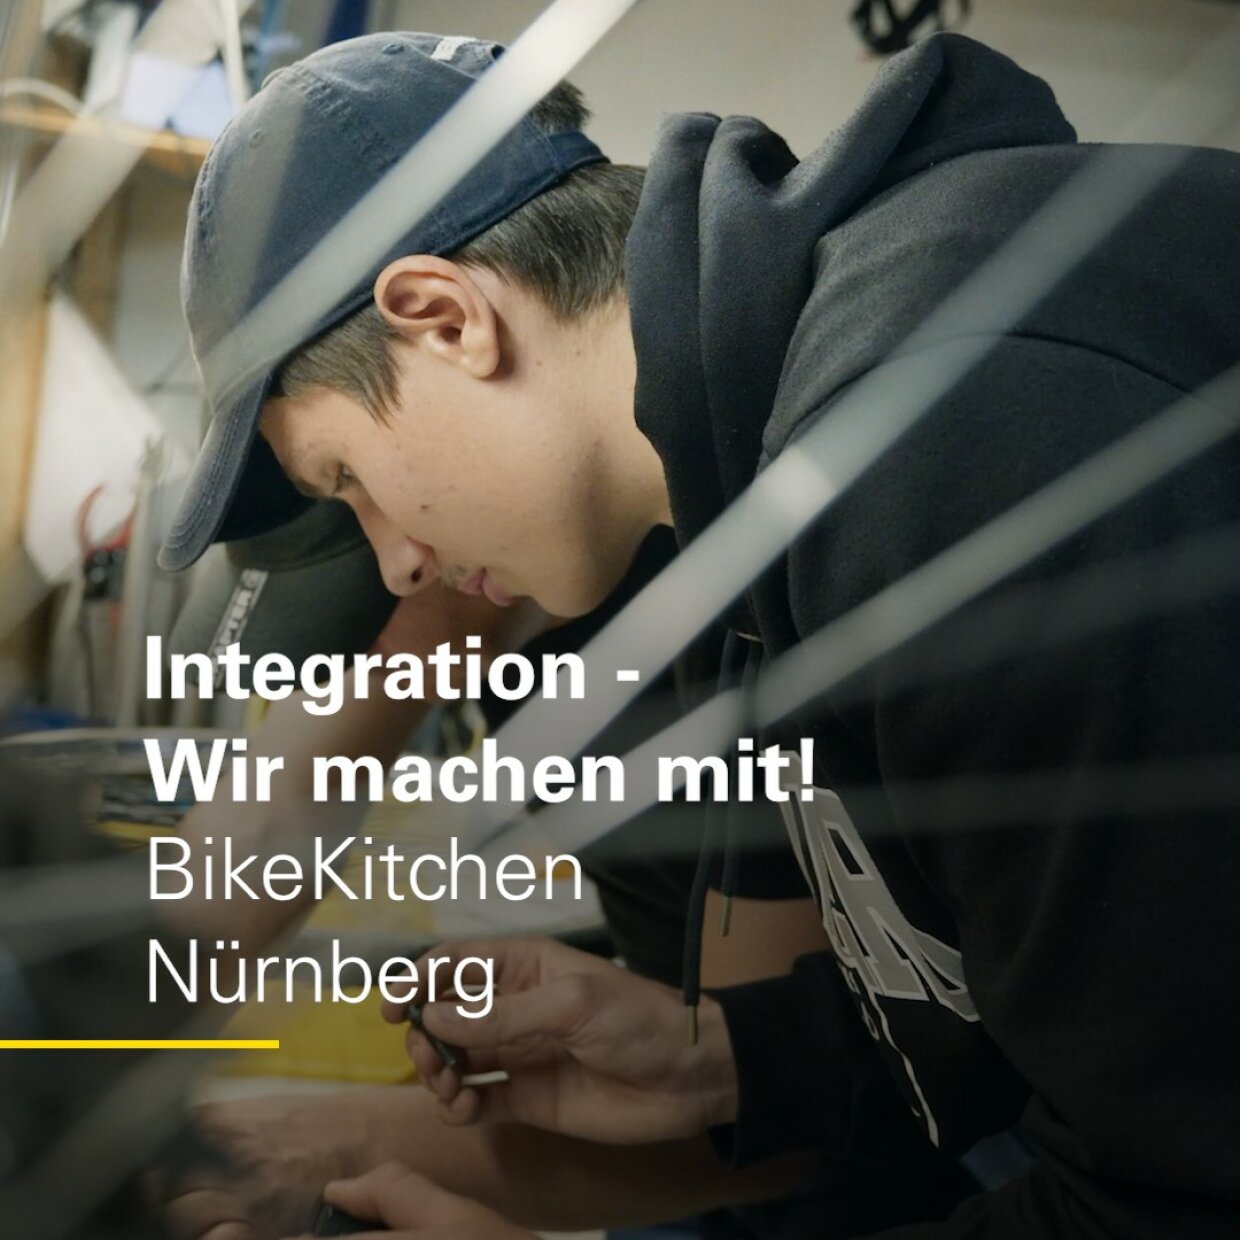 Integration - wir machen mit! BikeKitchen Nürnberg